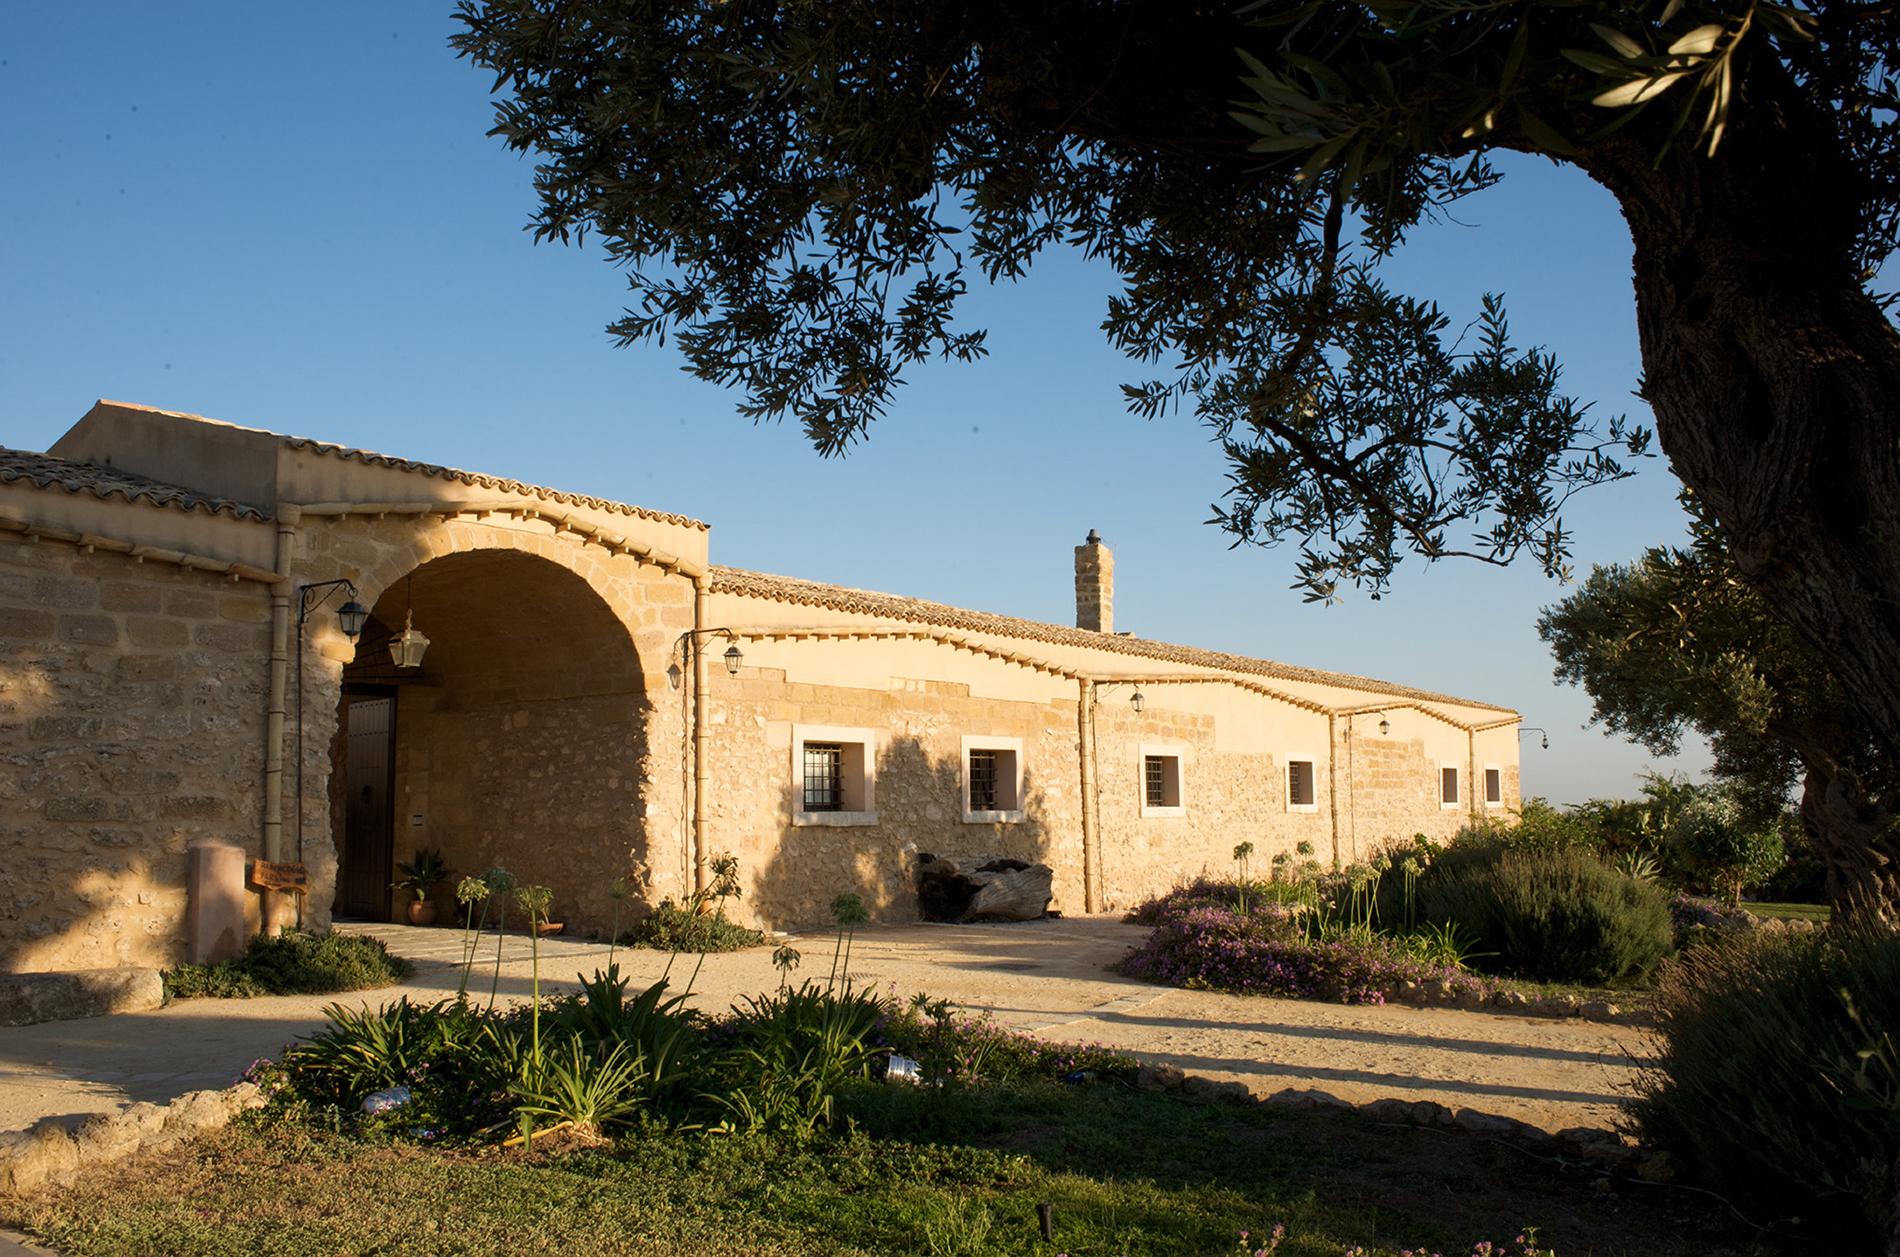 Magnifique domaine viticole sicilien - 7